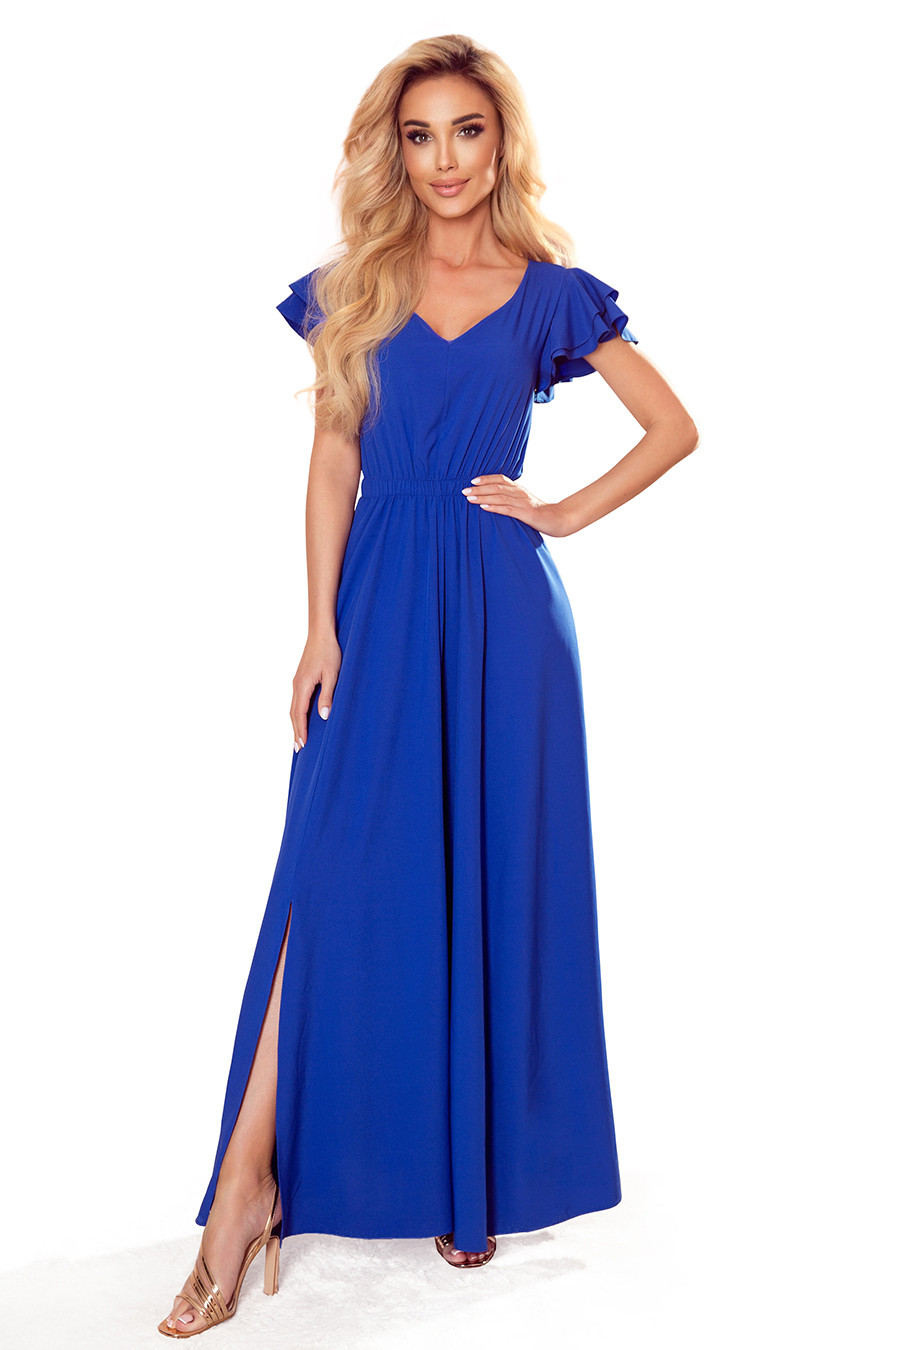 LIDIA - Dlouhé dámské šaty v chrpové barvě s výstřihem a volánky 310-3 M